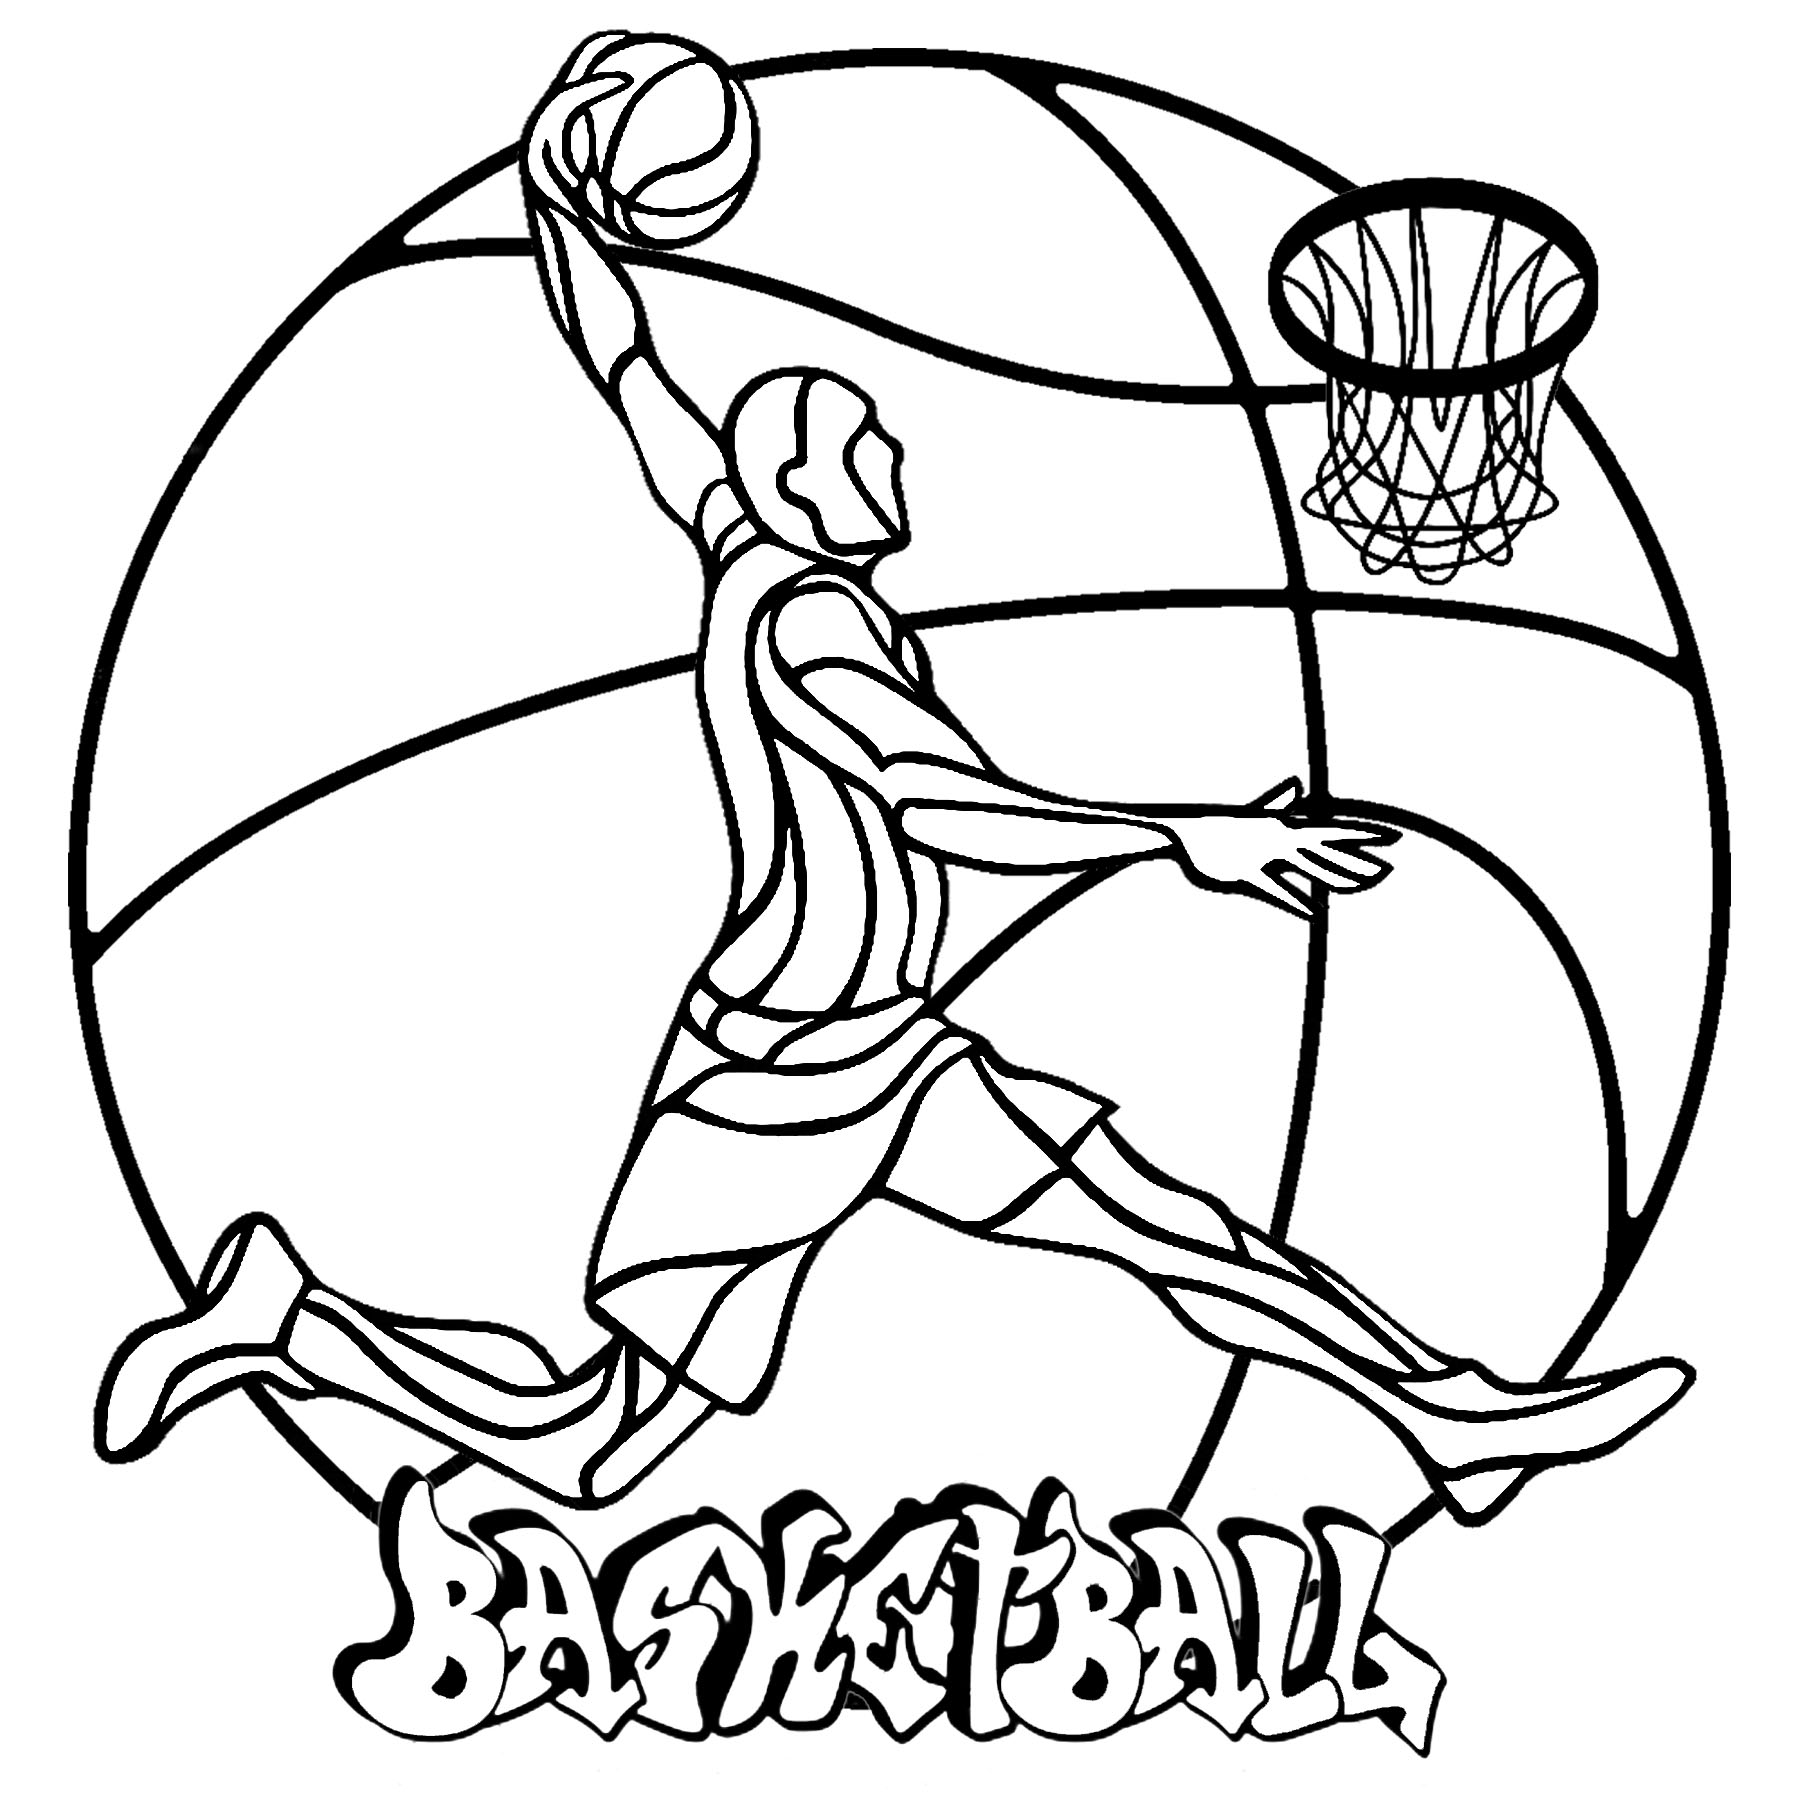 Un Mandala simple sur le thème du Basketball, avec un joueur de basket, un ballon, un panier et un tag 'Basketball', Artiste : Art'Isabelle